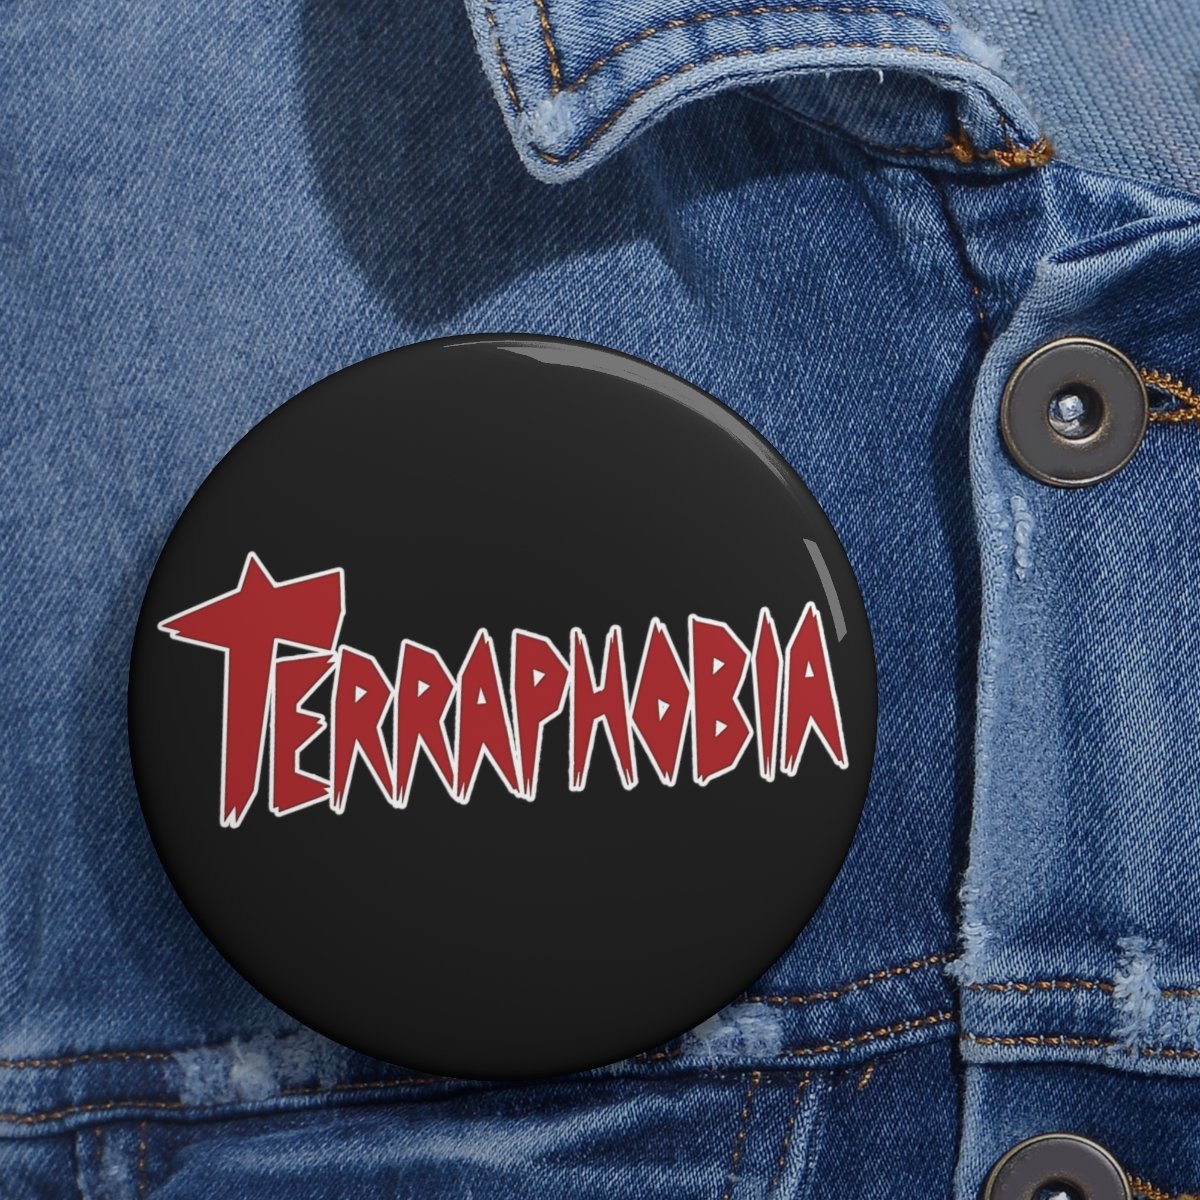 Terraphobia Logo Pin Buttons